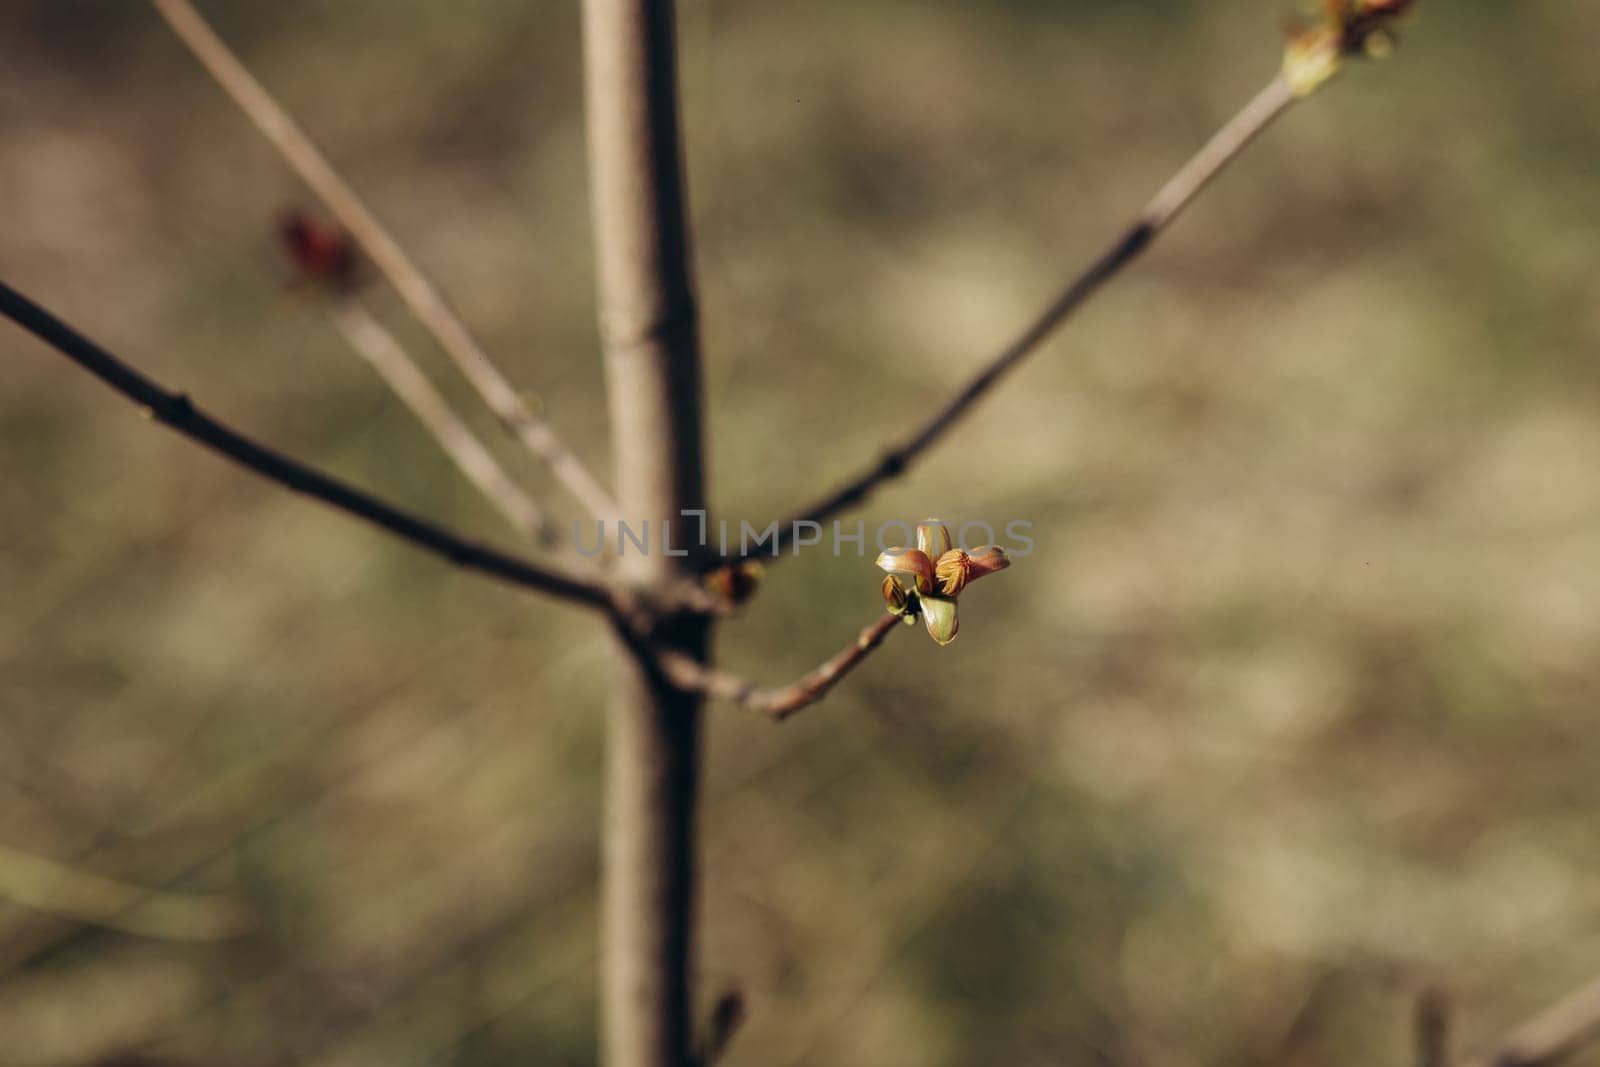 trees and leaves bloom in spring by IvanDerkachphoto